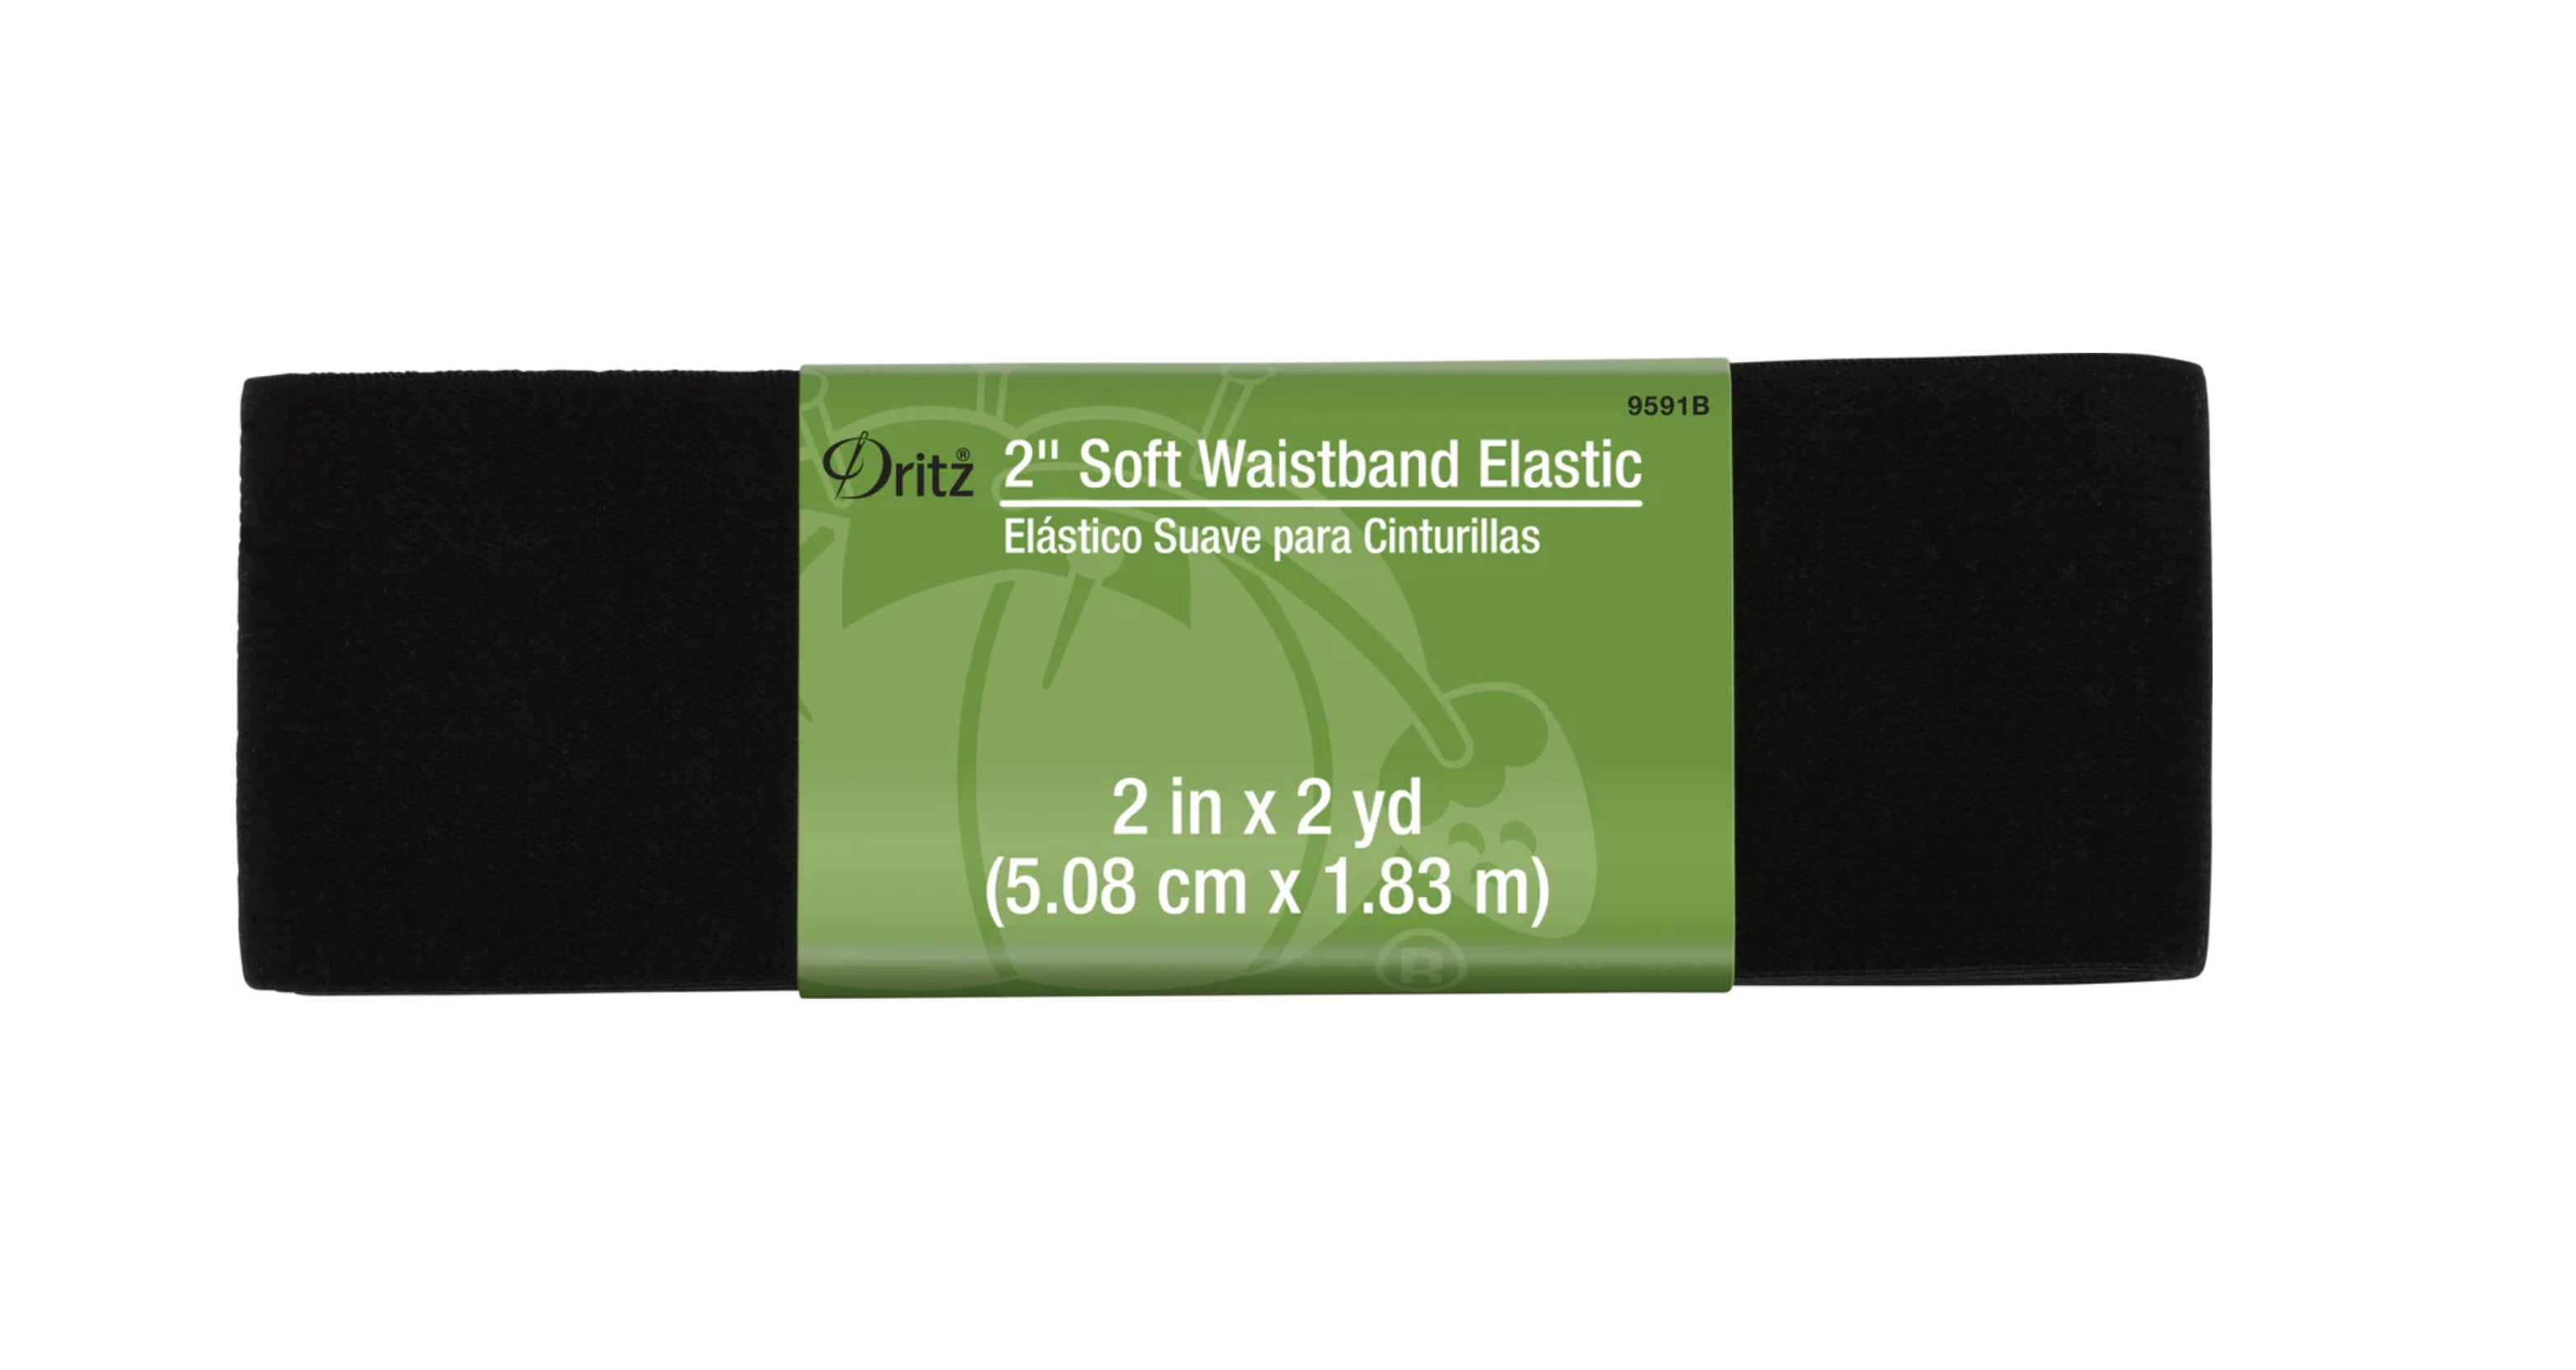 Black Soft Waistband Elastic (2in x 2 yds) -- Ref. 9591B -- by Drittz®